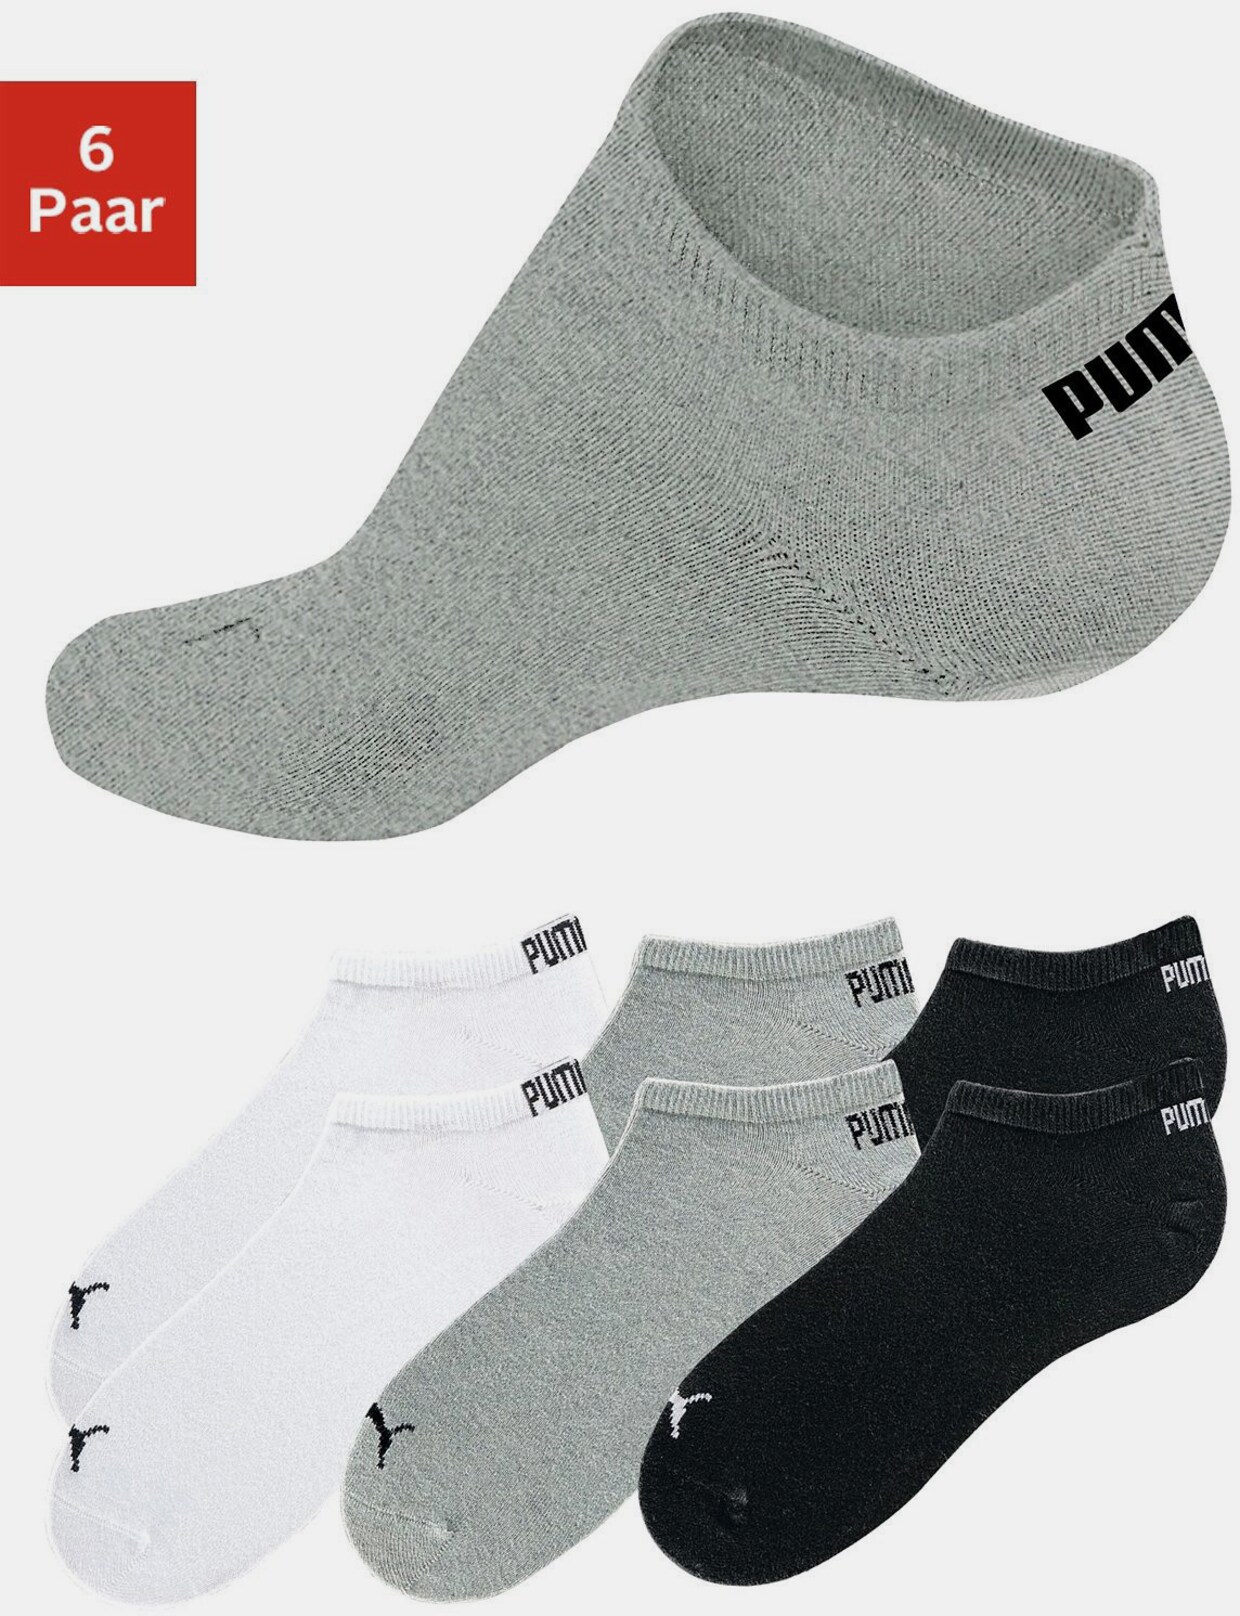 PUMA Sneakersokken - wit, grijs gemêleerd, zwart